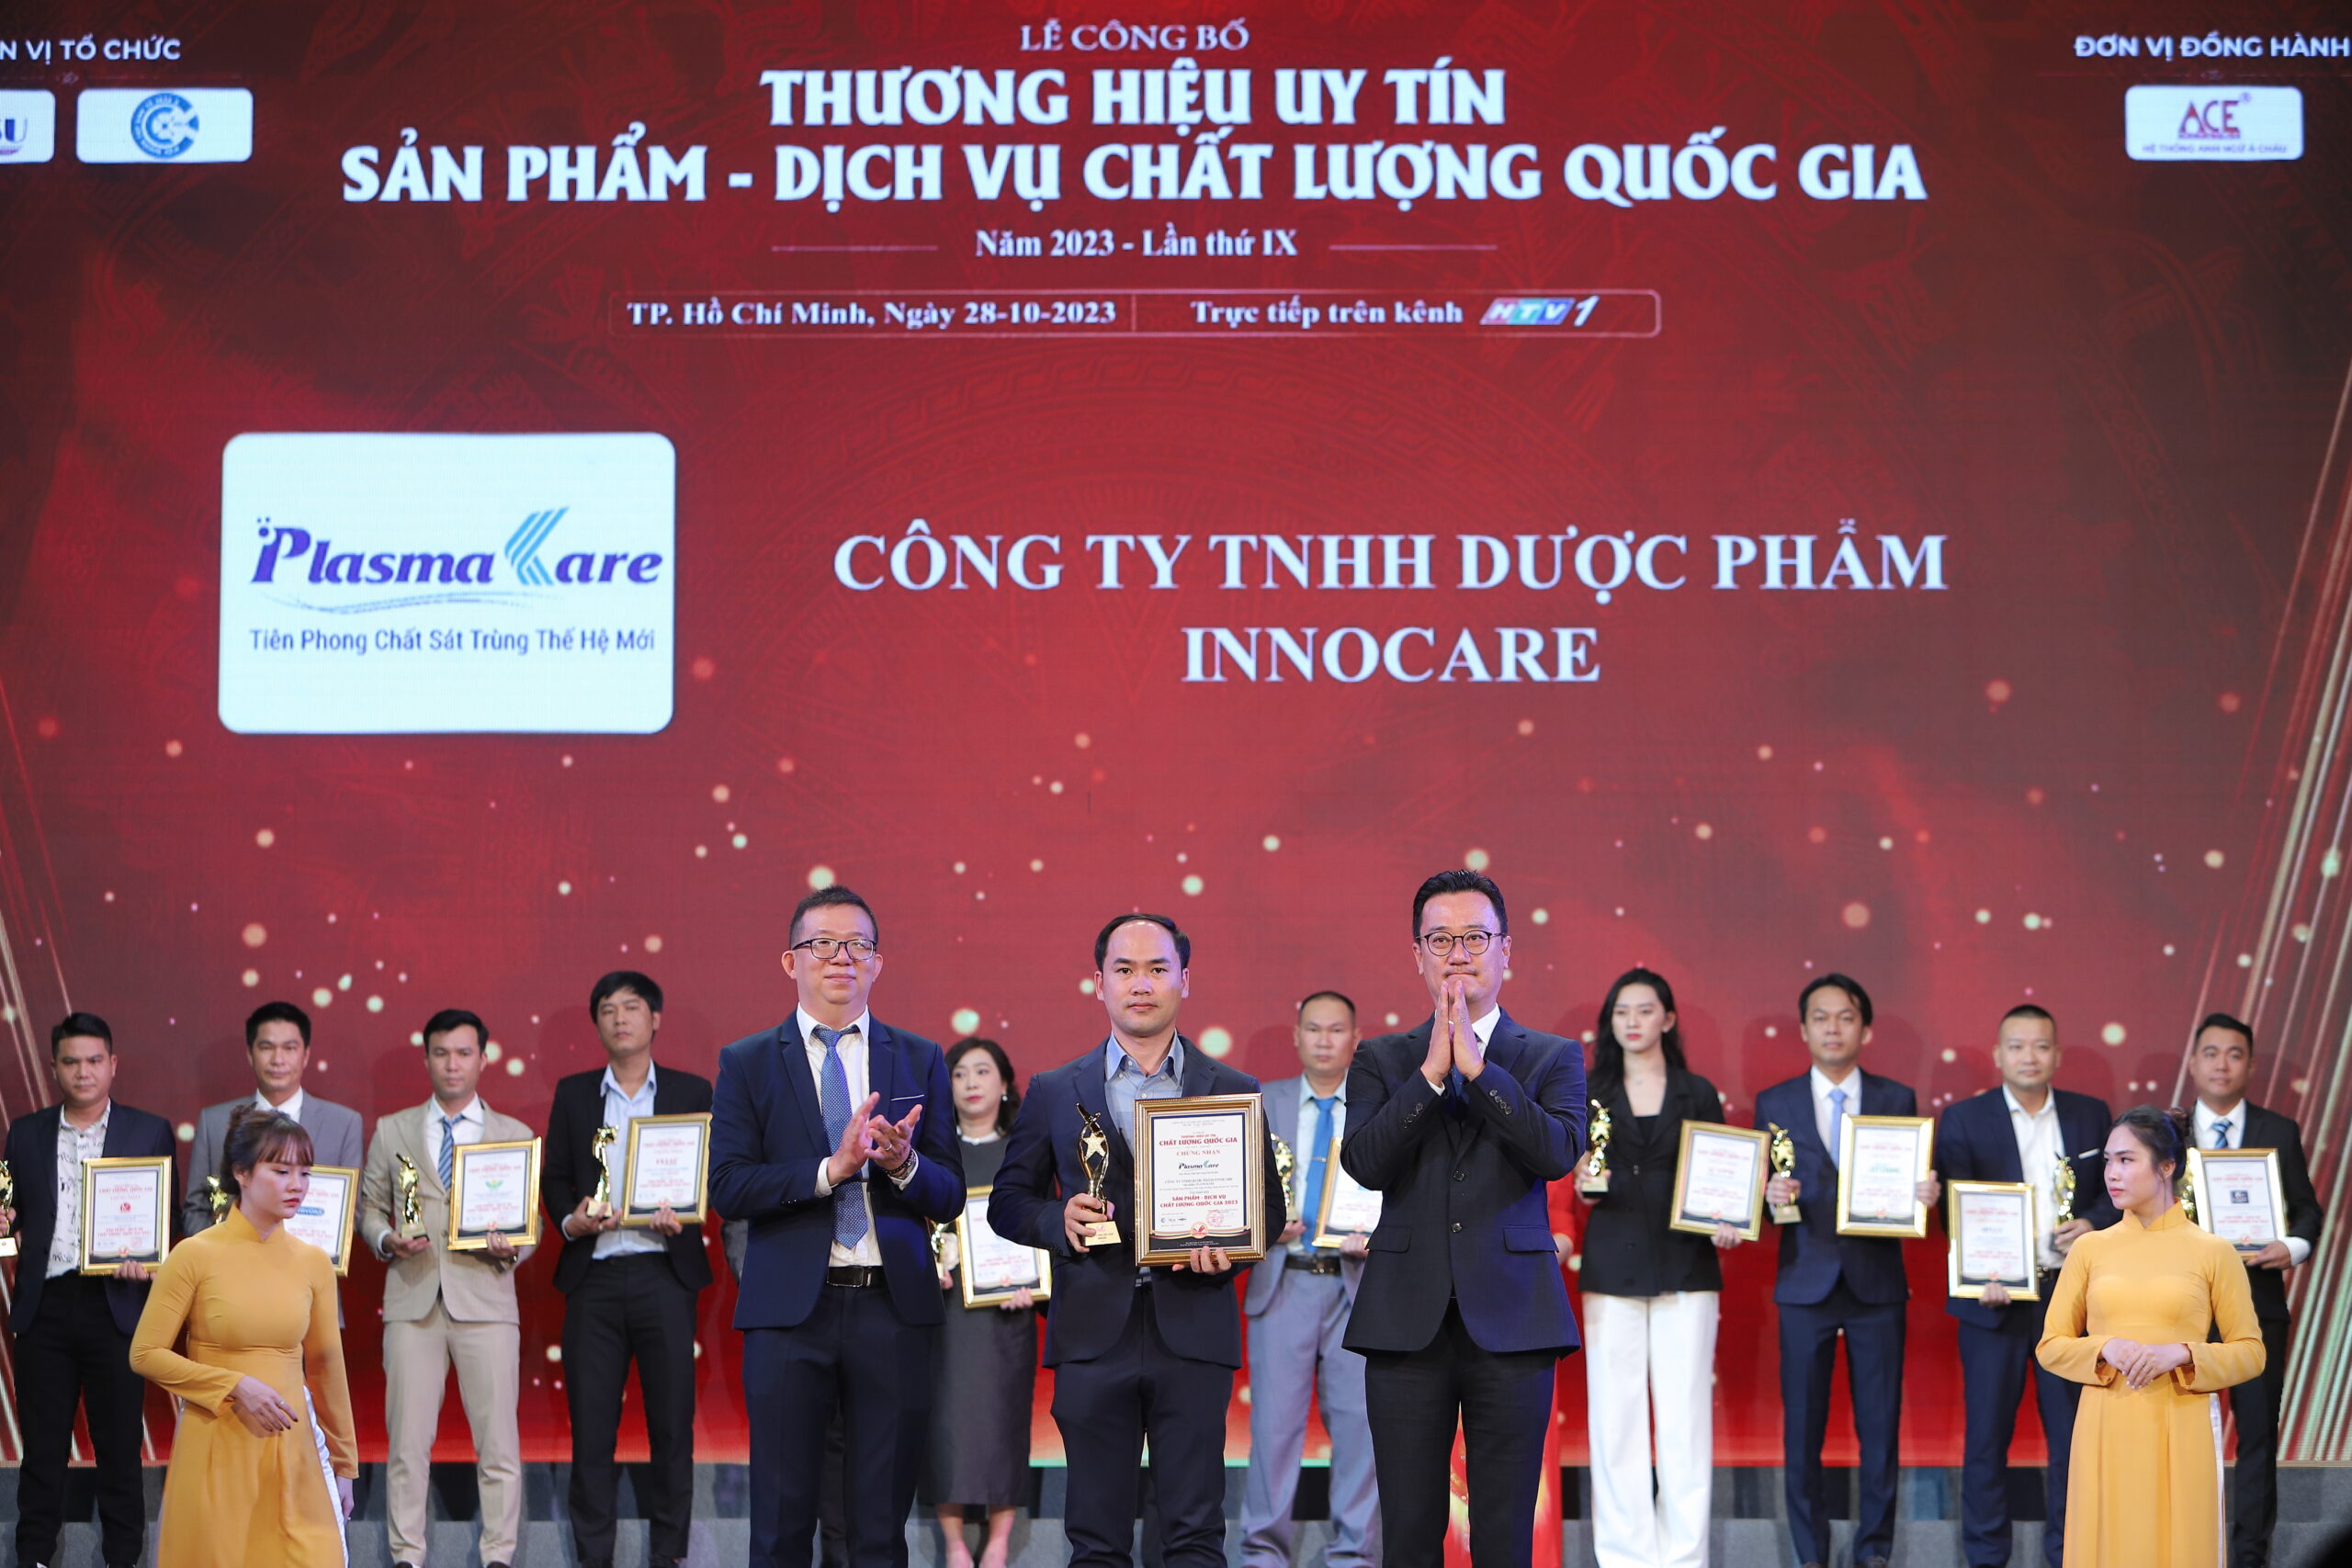 Dược phẩm Innocare vinh dự nhận giải thưởng Thương hiệu uy tín Sản phẩm dịch vụ chất lượng Quốc gia 2